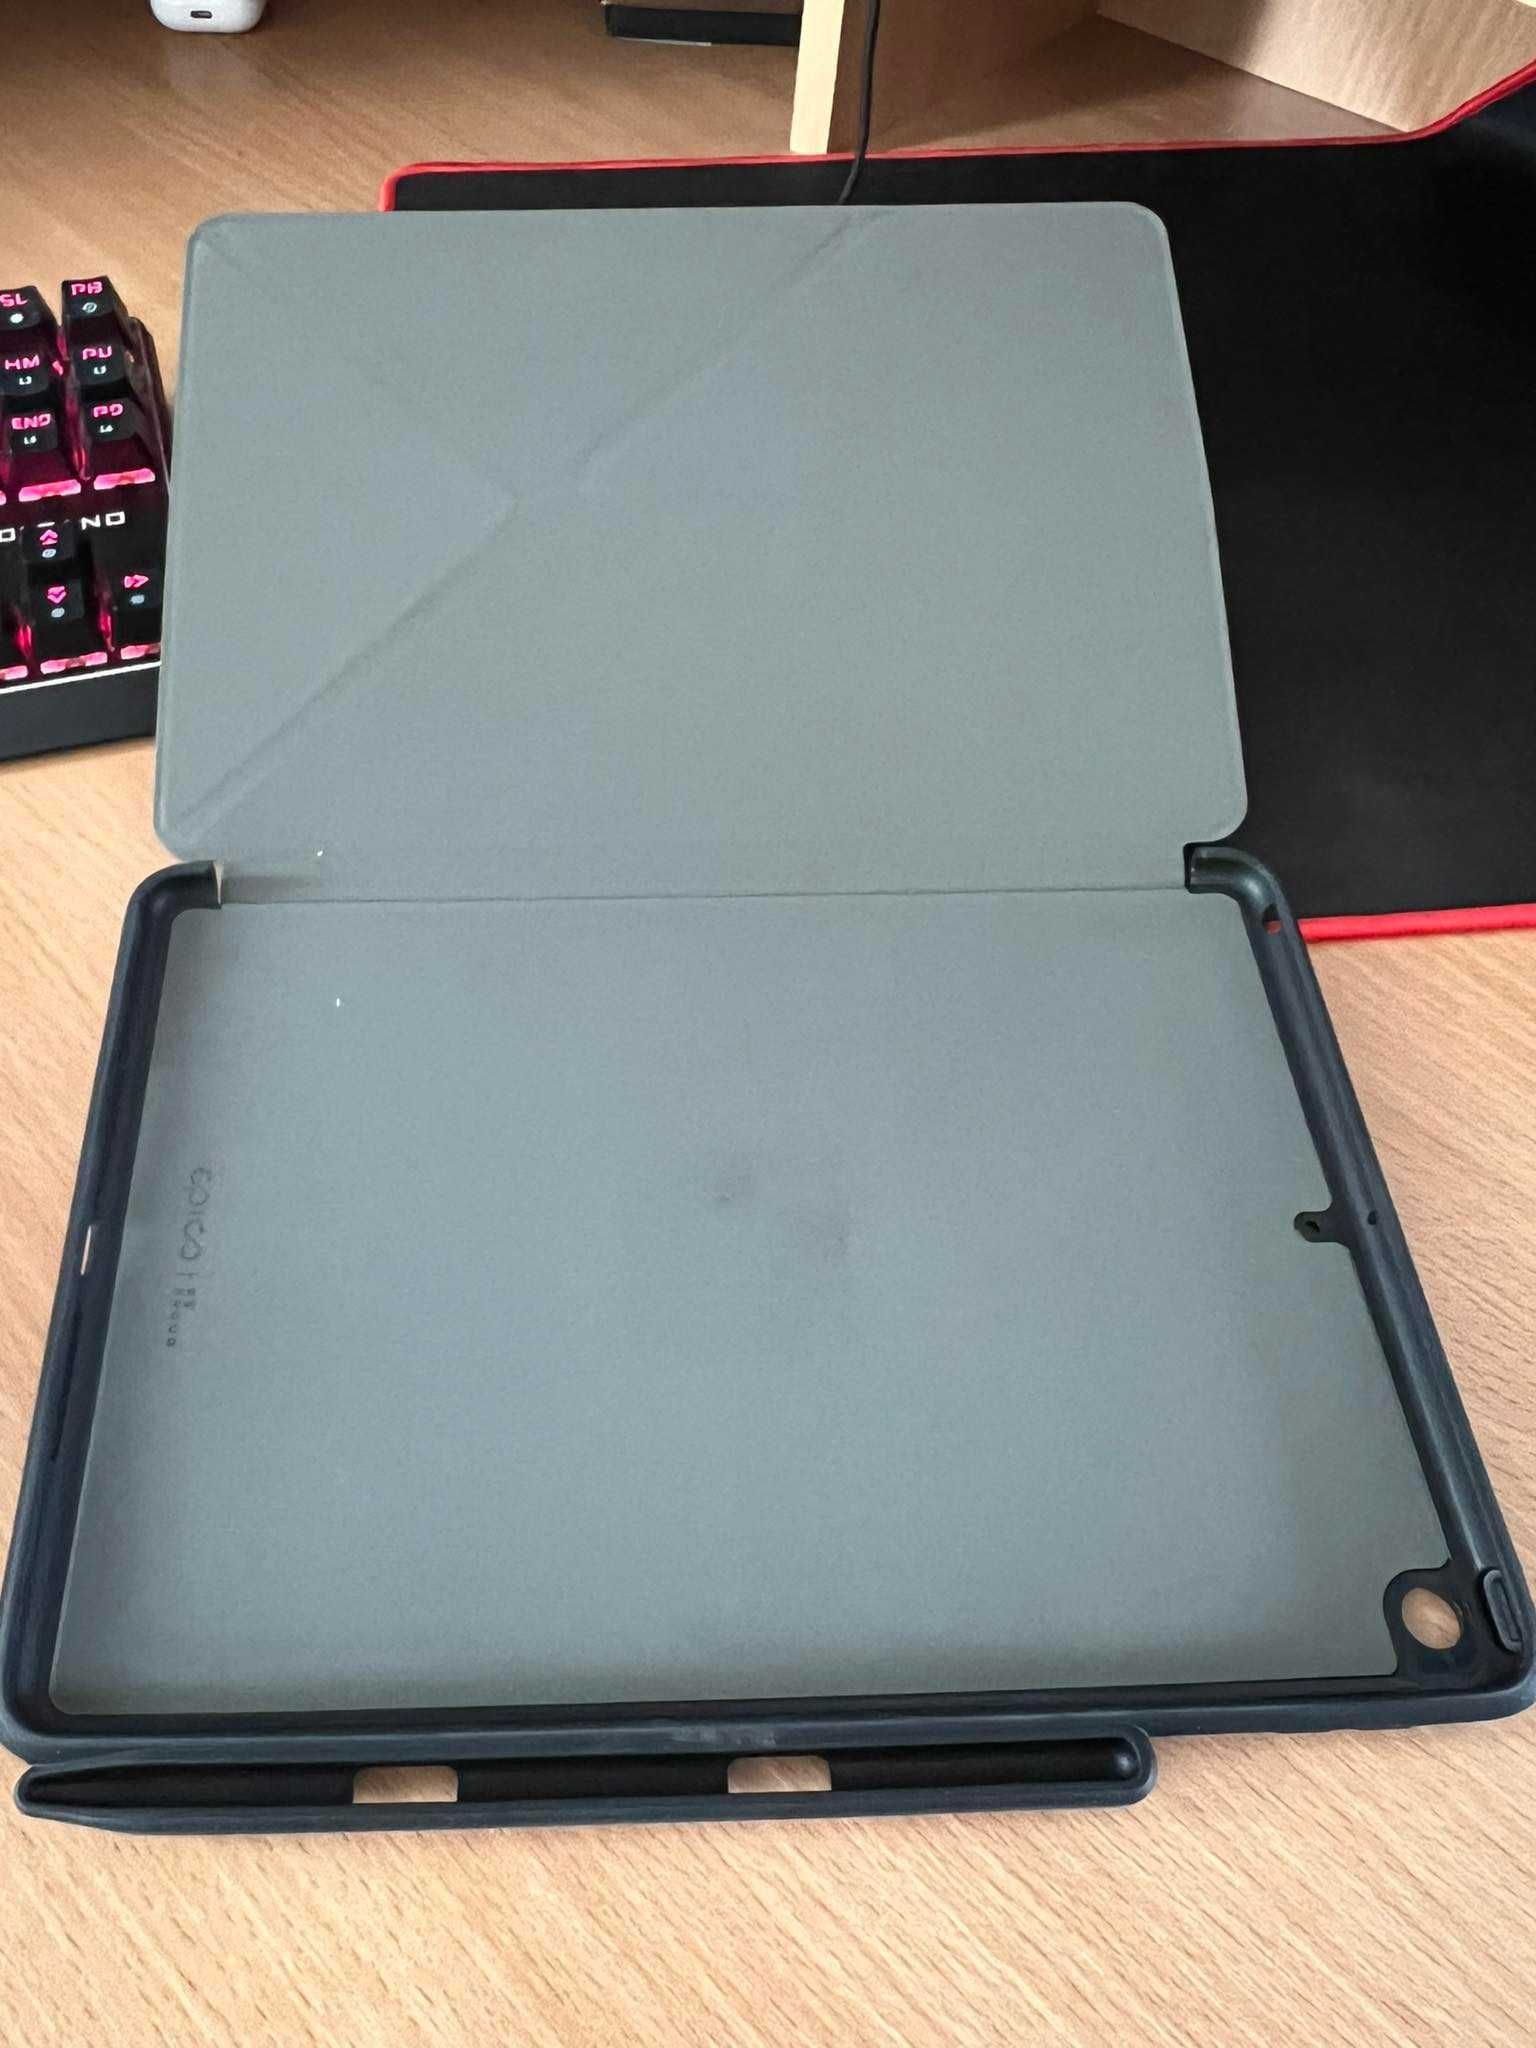 Epico Pro Flip Case black - etui dla iPad 10,2